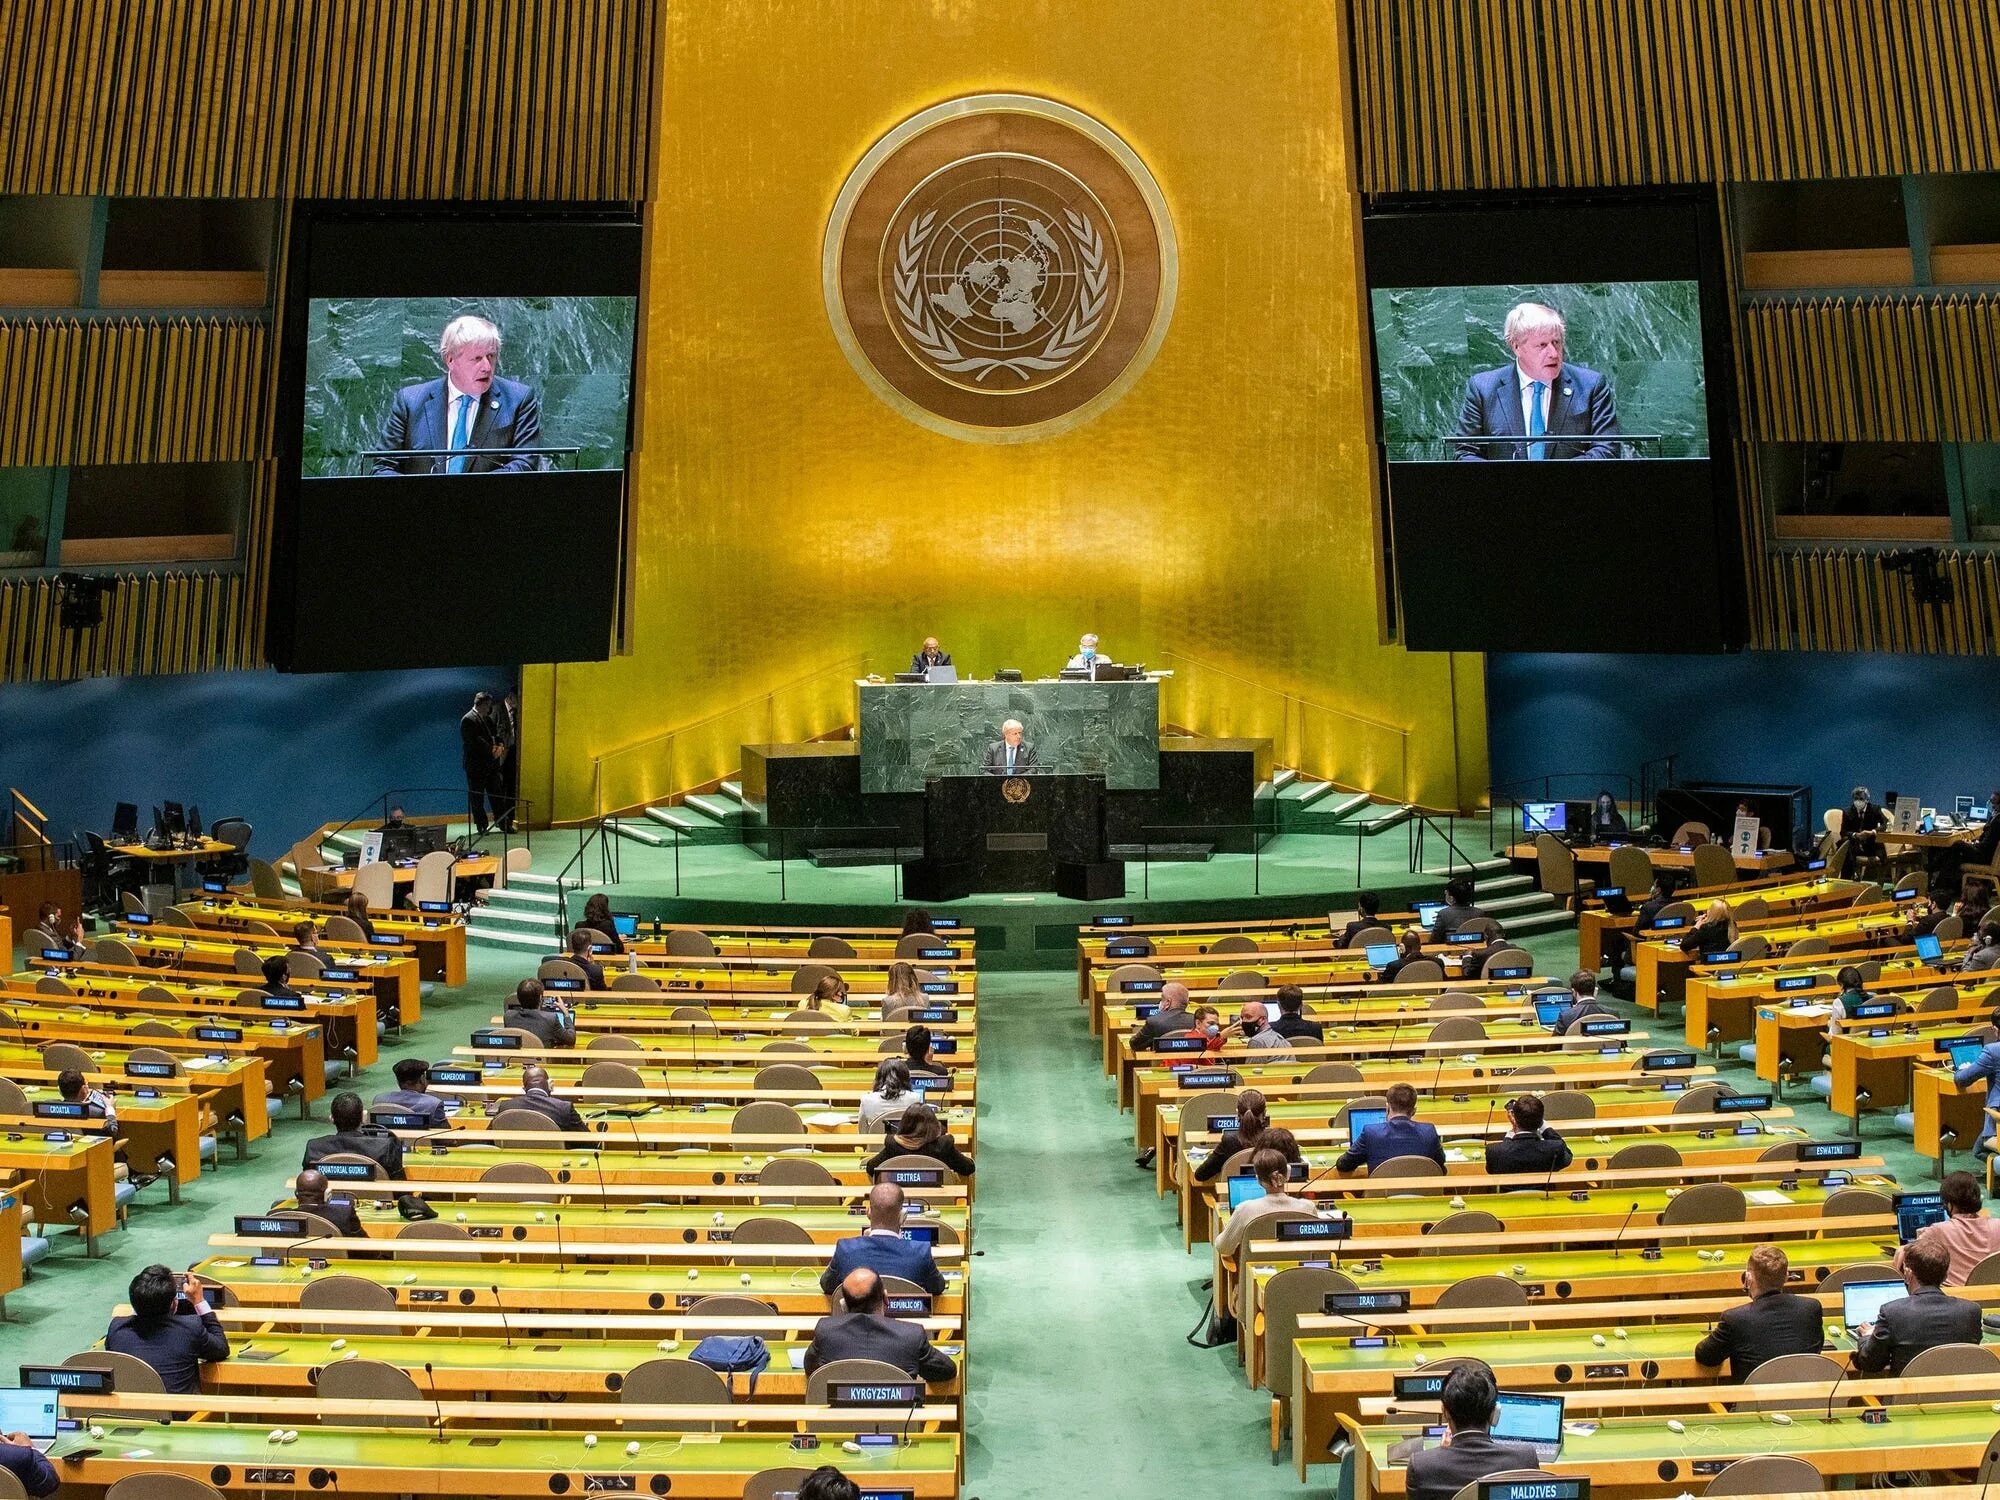 Генеральная Ассамблея ООН Нью-Йорк. 76-Й сессии Генеральной Ассамблеи ООН. Зал Генеральной Ассамблеи ООН. Генеральная Ассамблея ООН 2021. Организации оон в сша